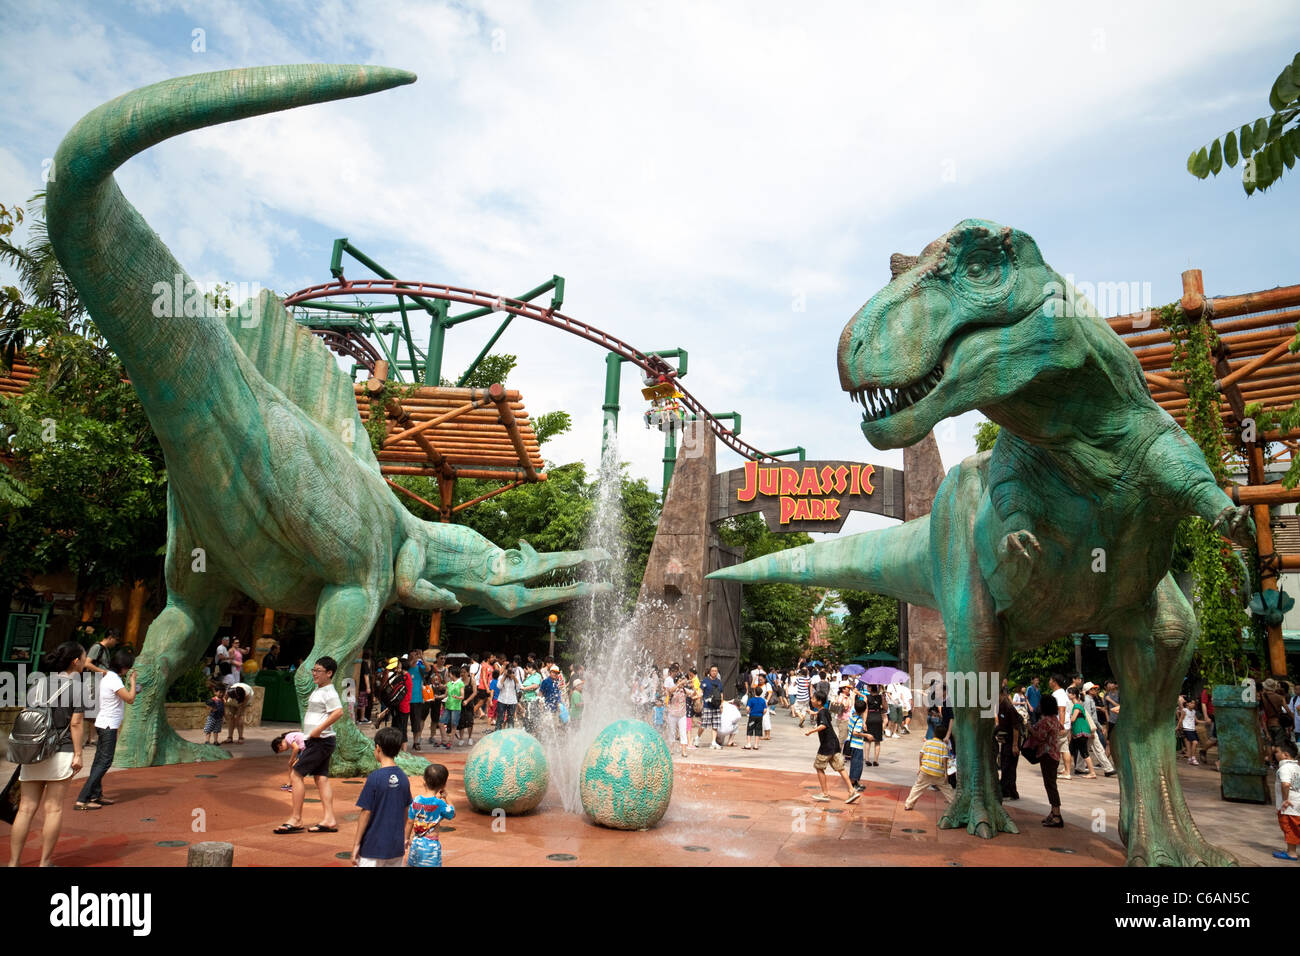 L'attraction Jurassic Park à Universal Studios Singapore Asie Banque D'Images